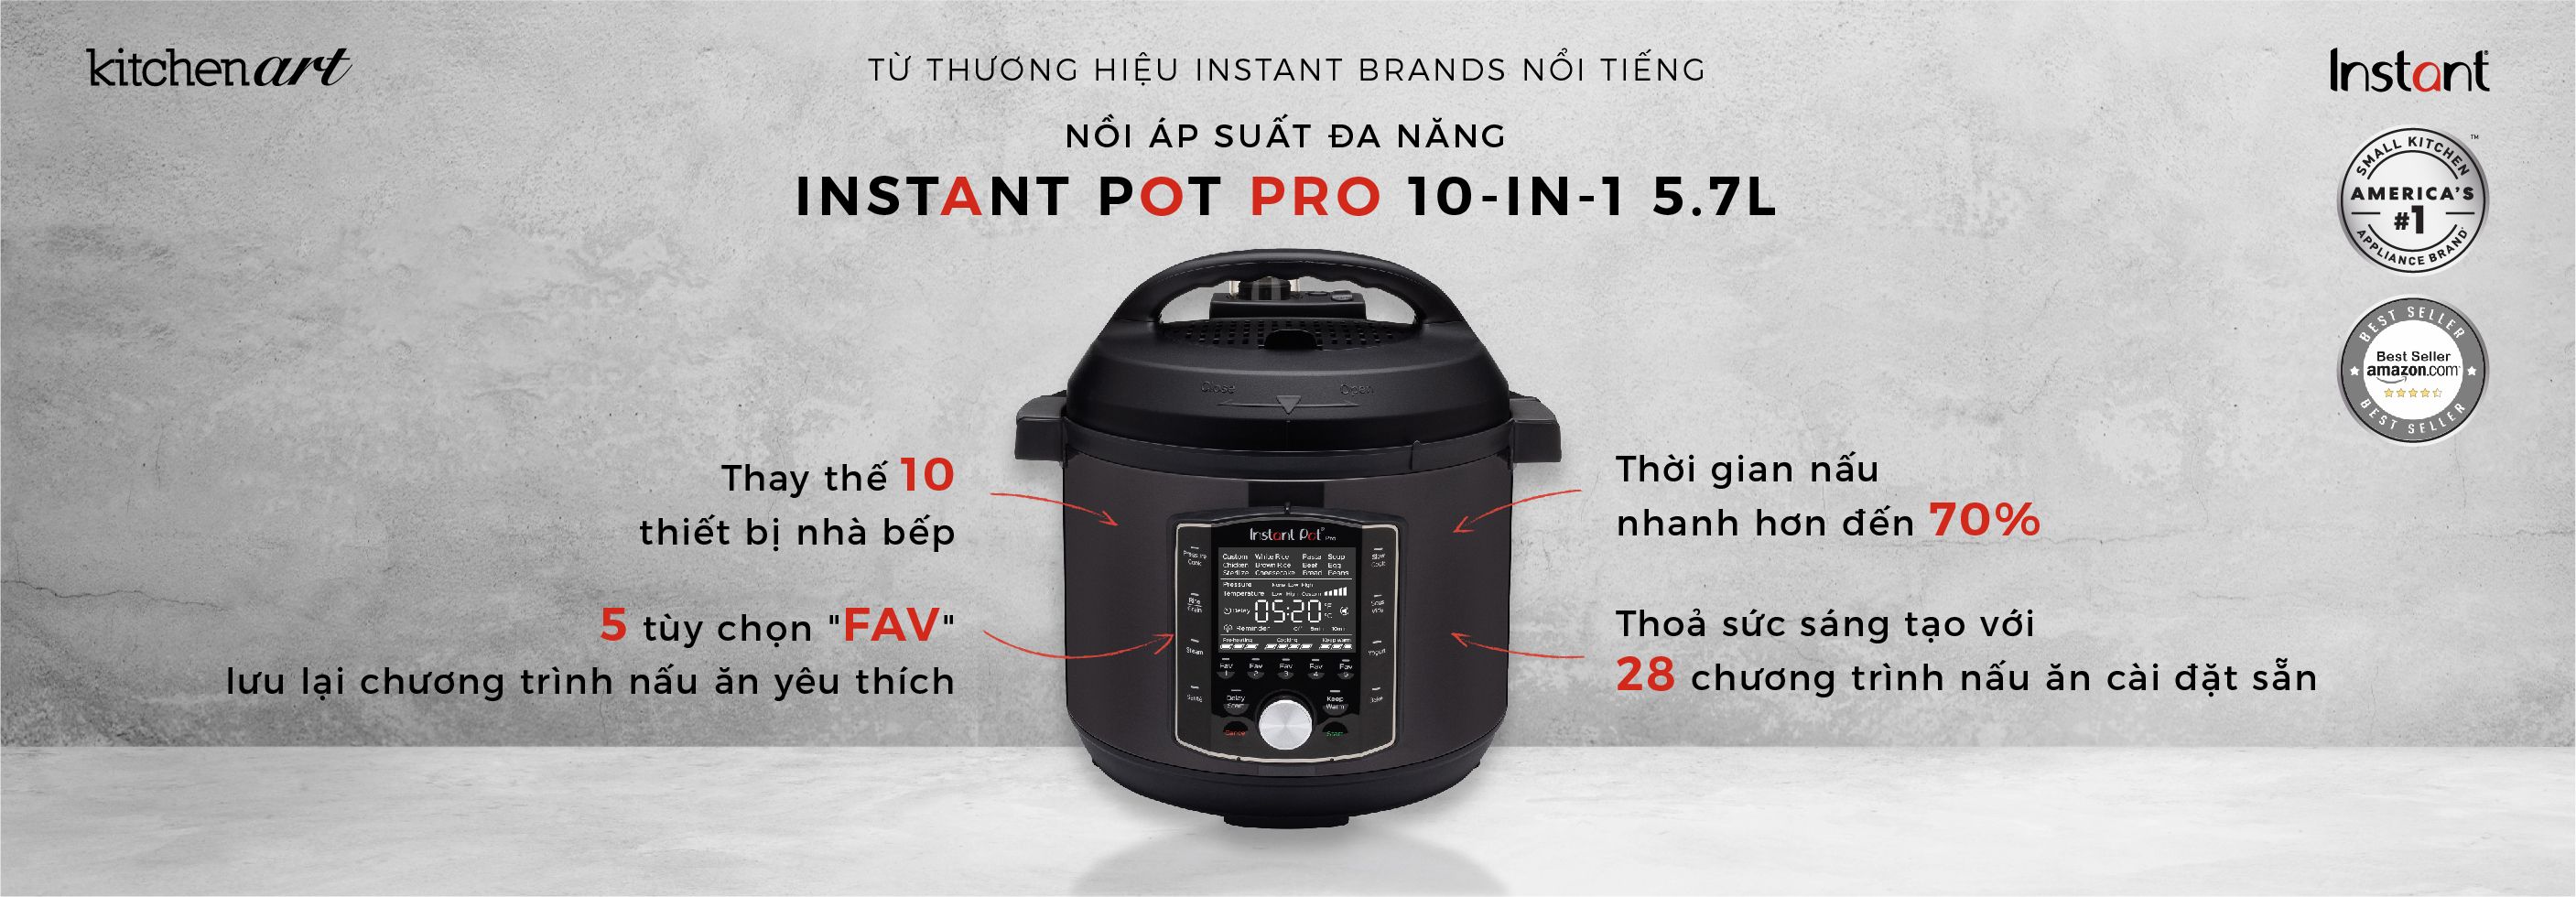 Instant Pot Pro